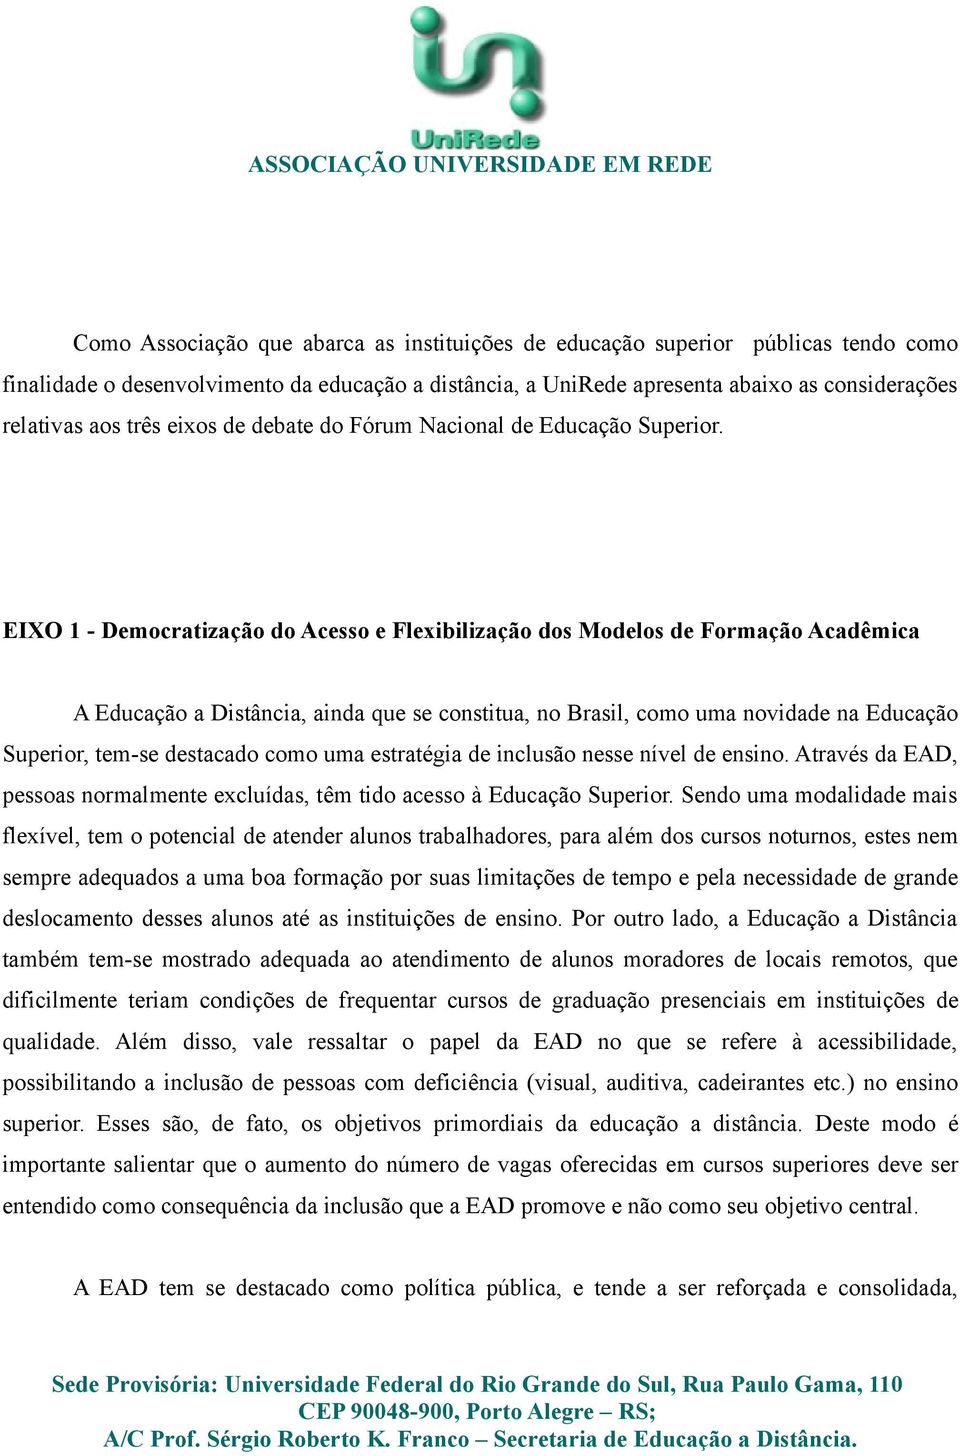 EIXO 1 - Democratização do Acesso e Flexibilização dos Modelos de Formação Acadêmica A Educação a Distância, ainda que se constitua, no Brasil, como uma novidade na Educação Superior, tem-se